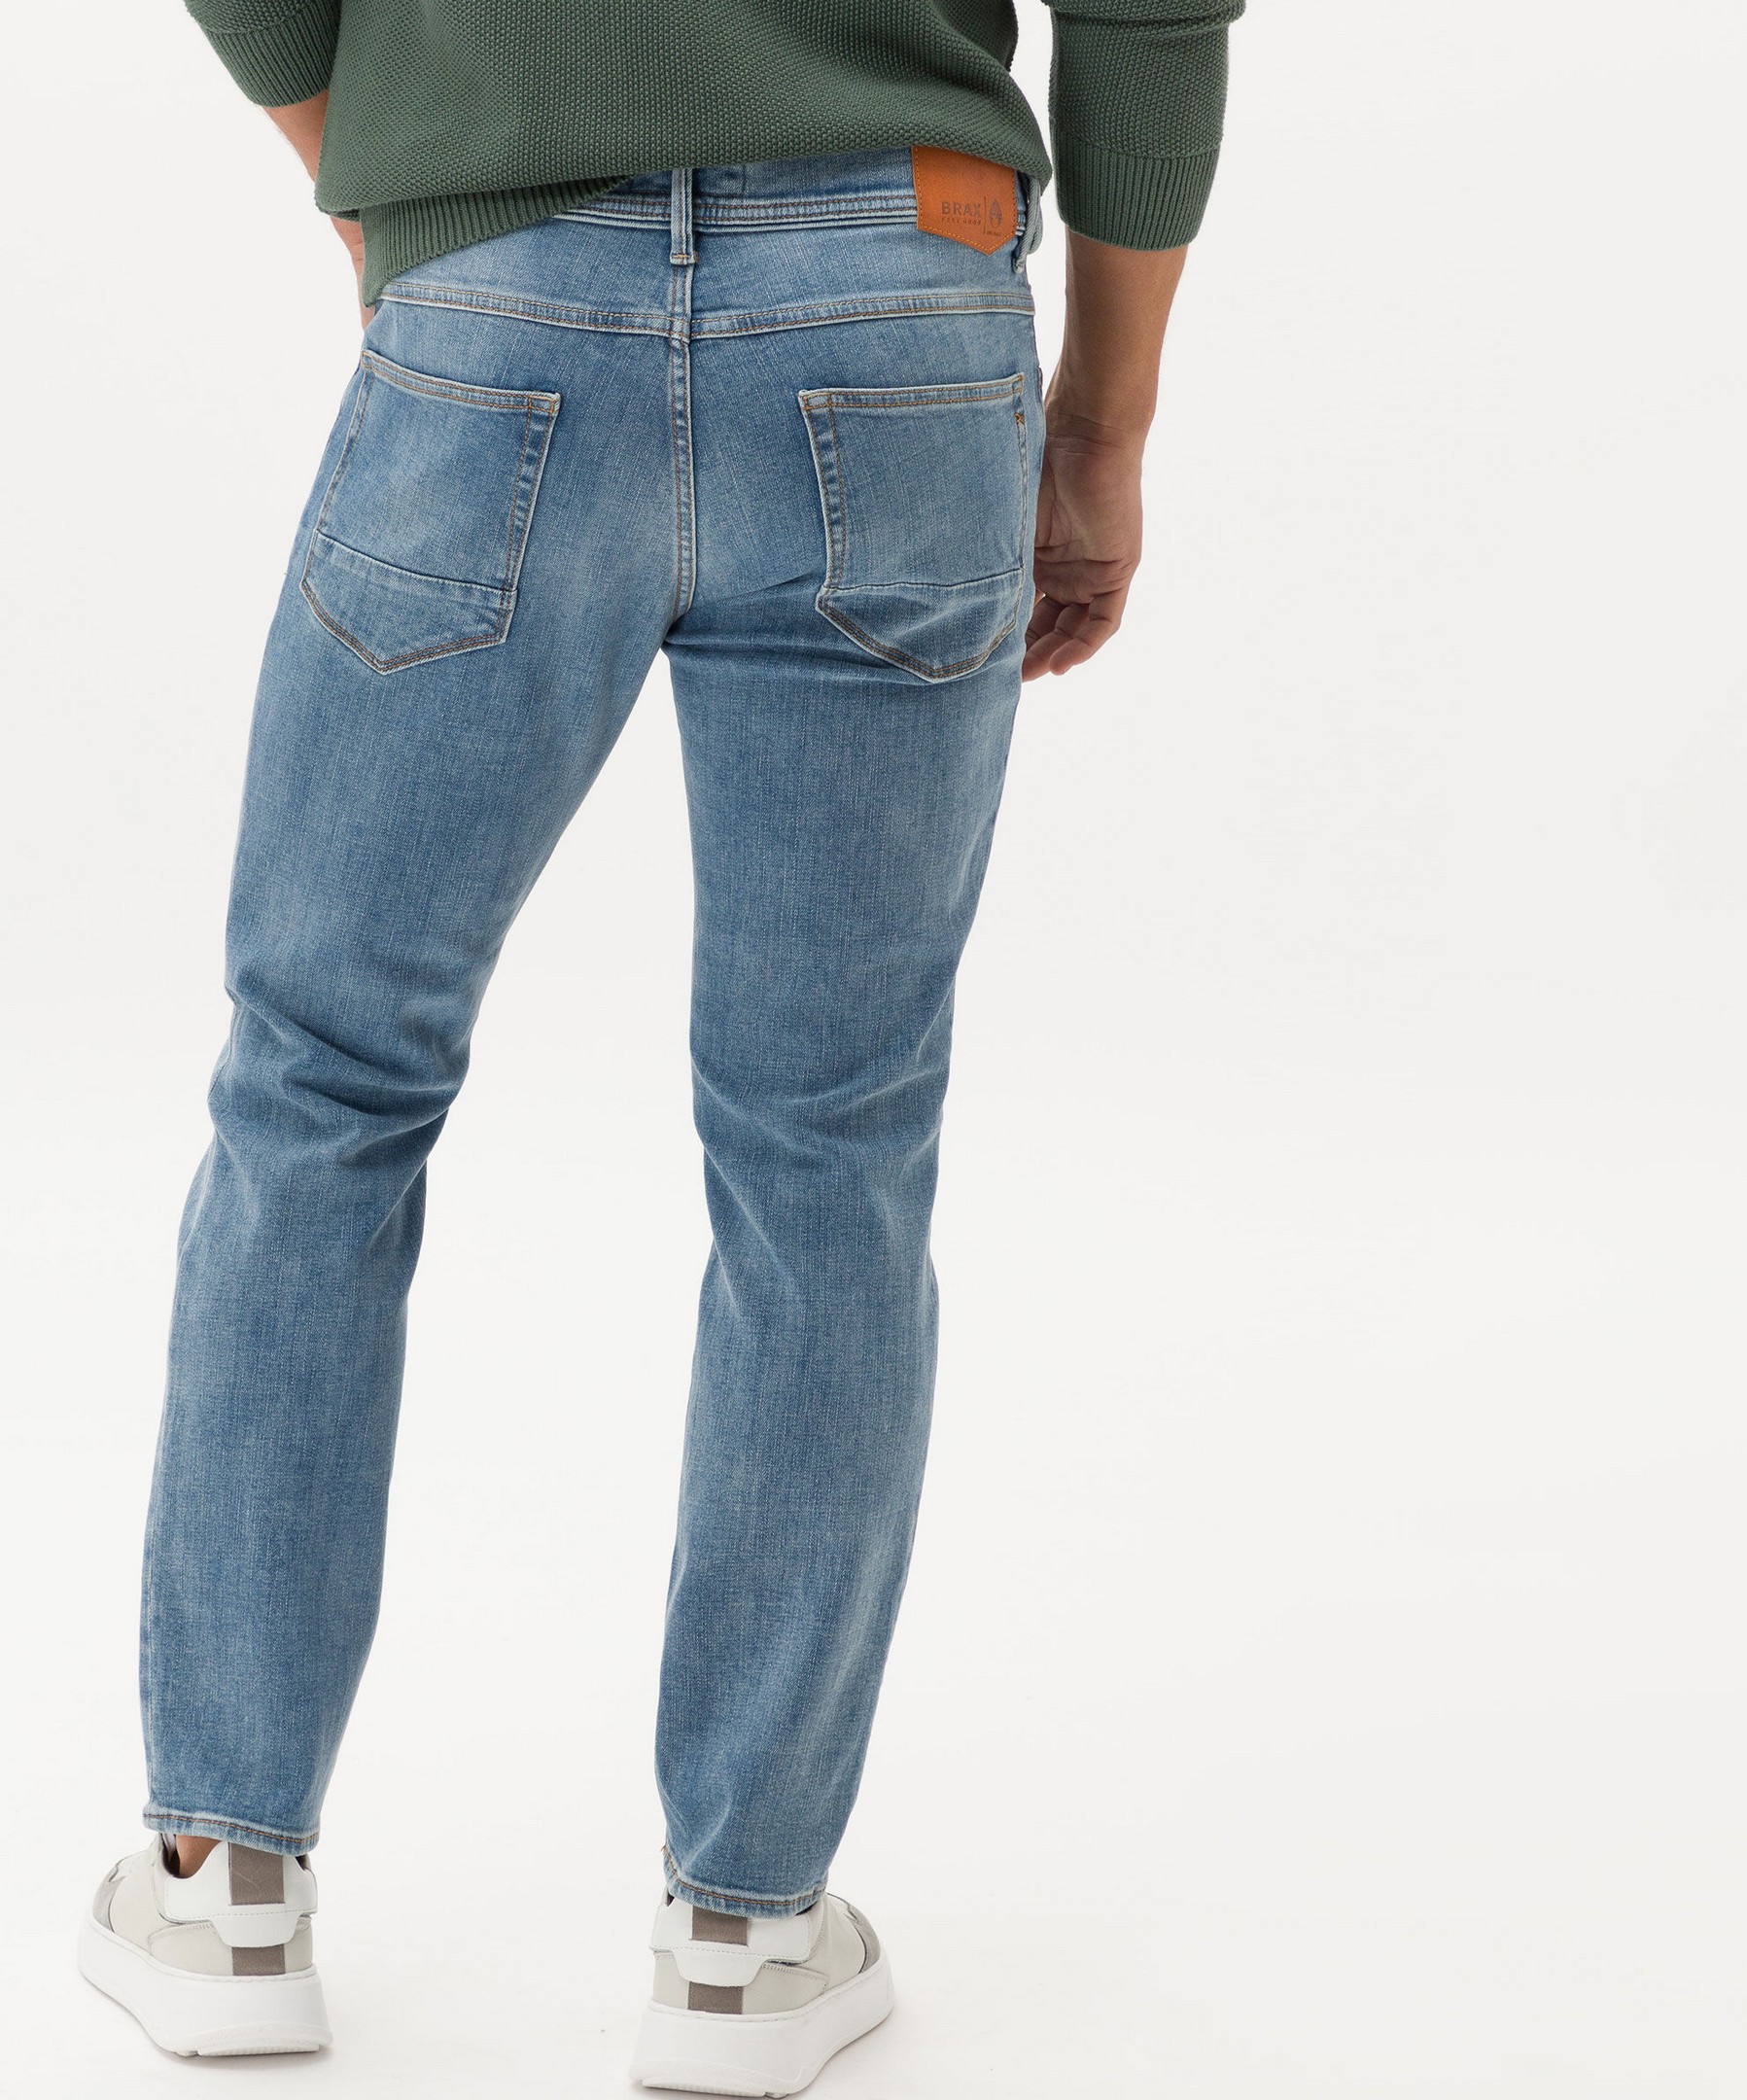 Jeans Jan Chris Fashion Rozing Men\'s Blue Superstretch Denim Blue Hi-Flex Used Vintage Brax 5-Pocket Salt | Planet